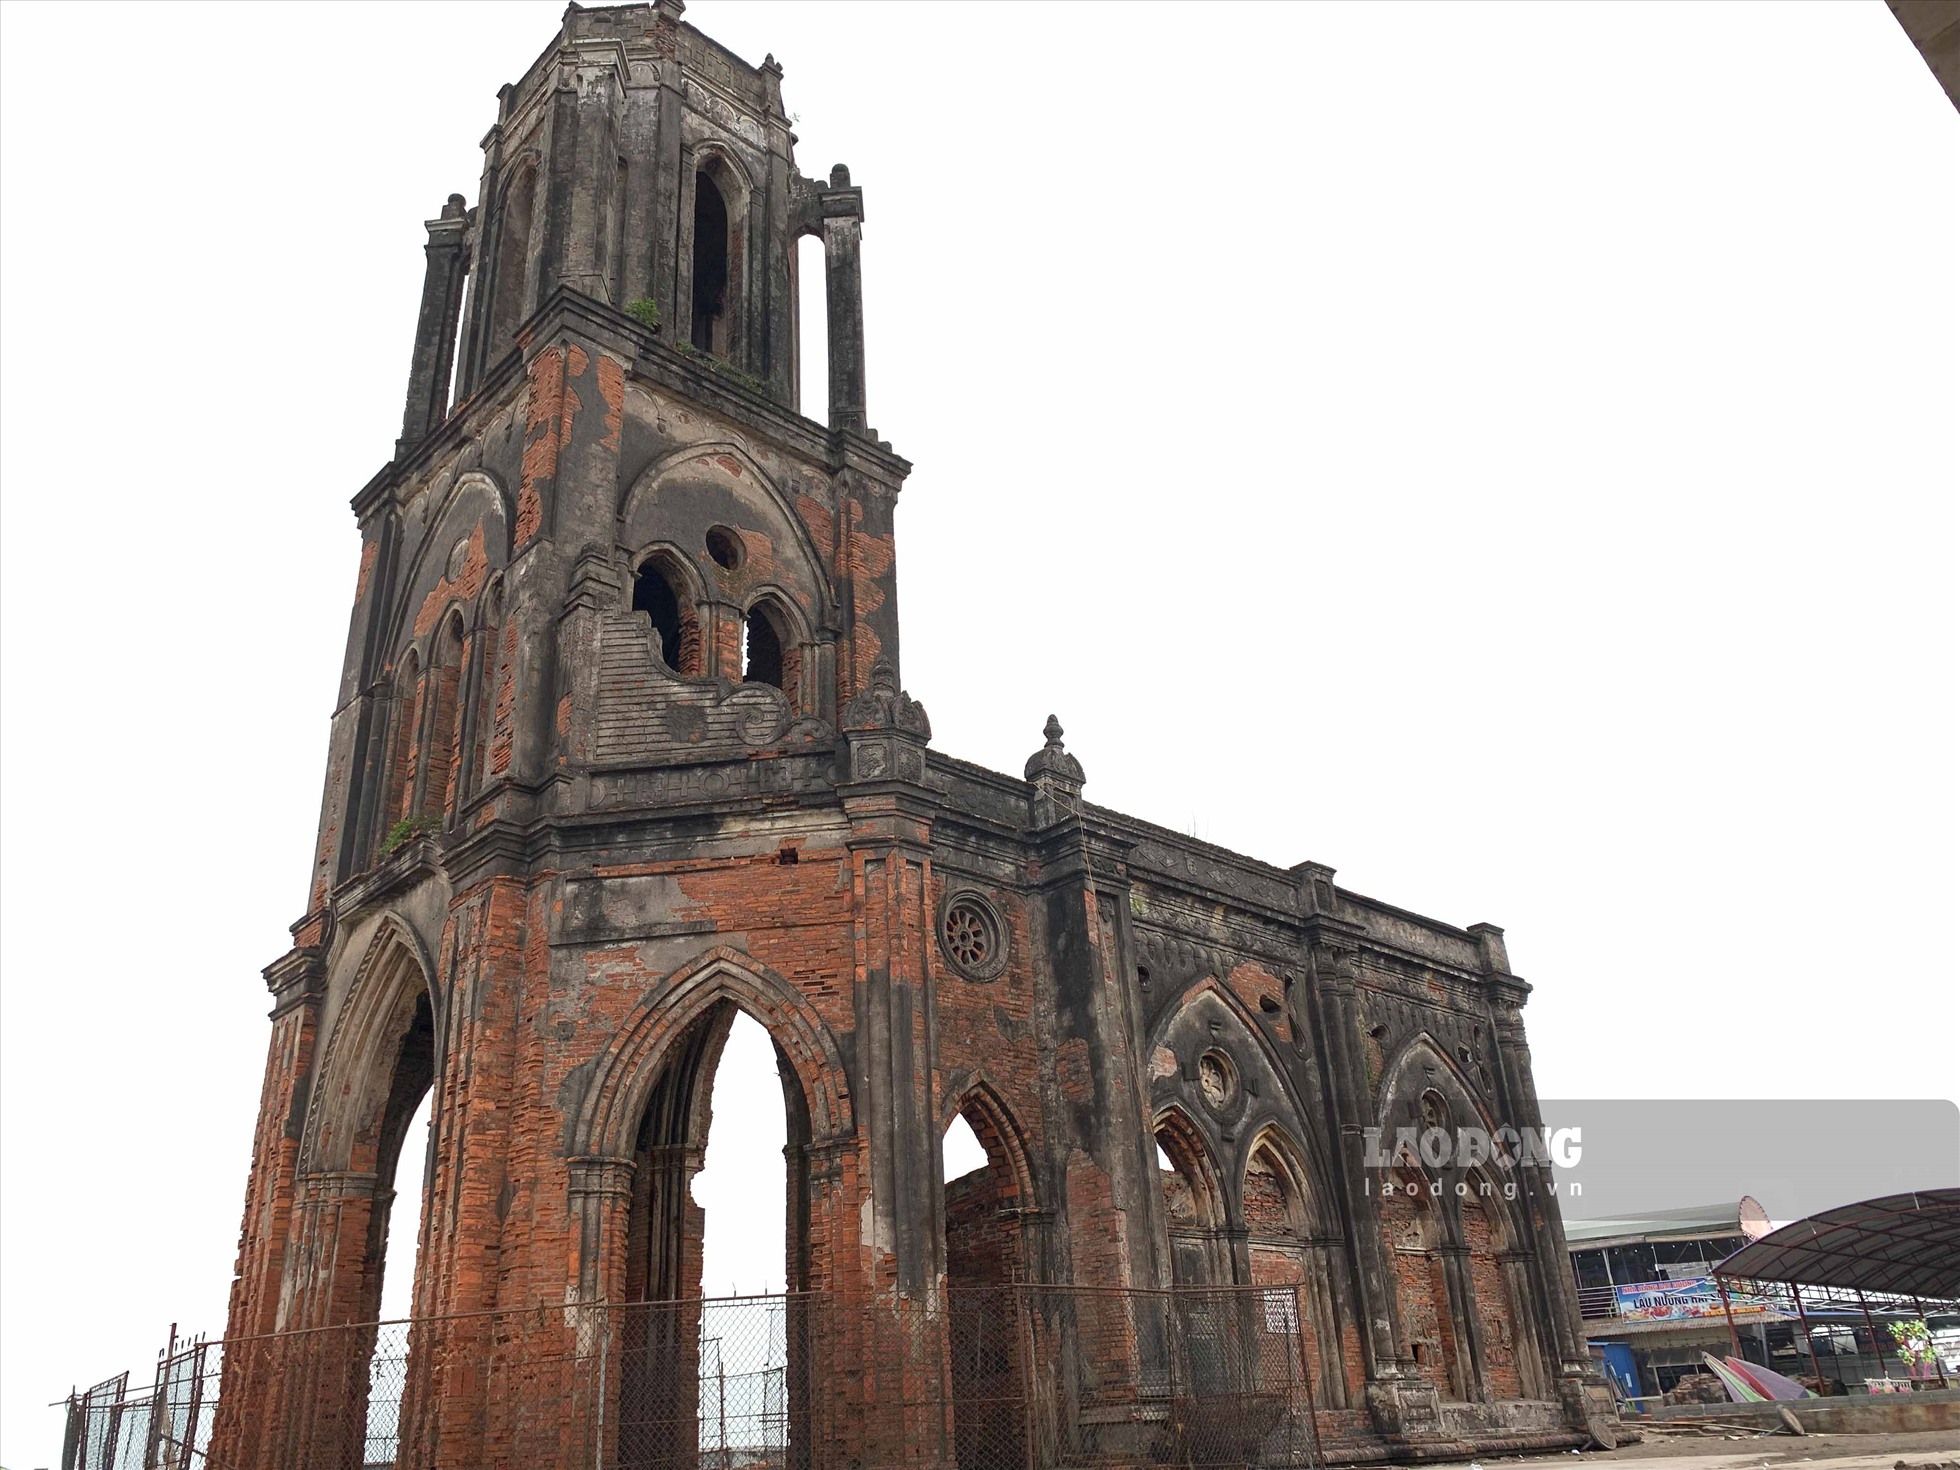 Nhà thở đổ chính là chứng tích Tháp chuông nhà thờ đổ trên bãi biển xã Hải Lý là dấu tích còn lại của nhà thờ họ Lái Tim Chúa (Trái Tim Chúa) có từ năm 1877 thuộc làng chài Xương Điền.